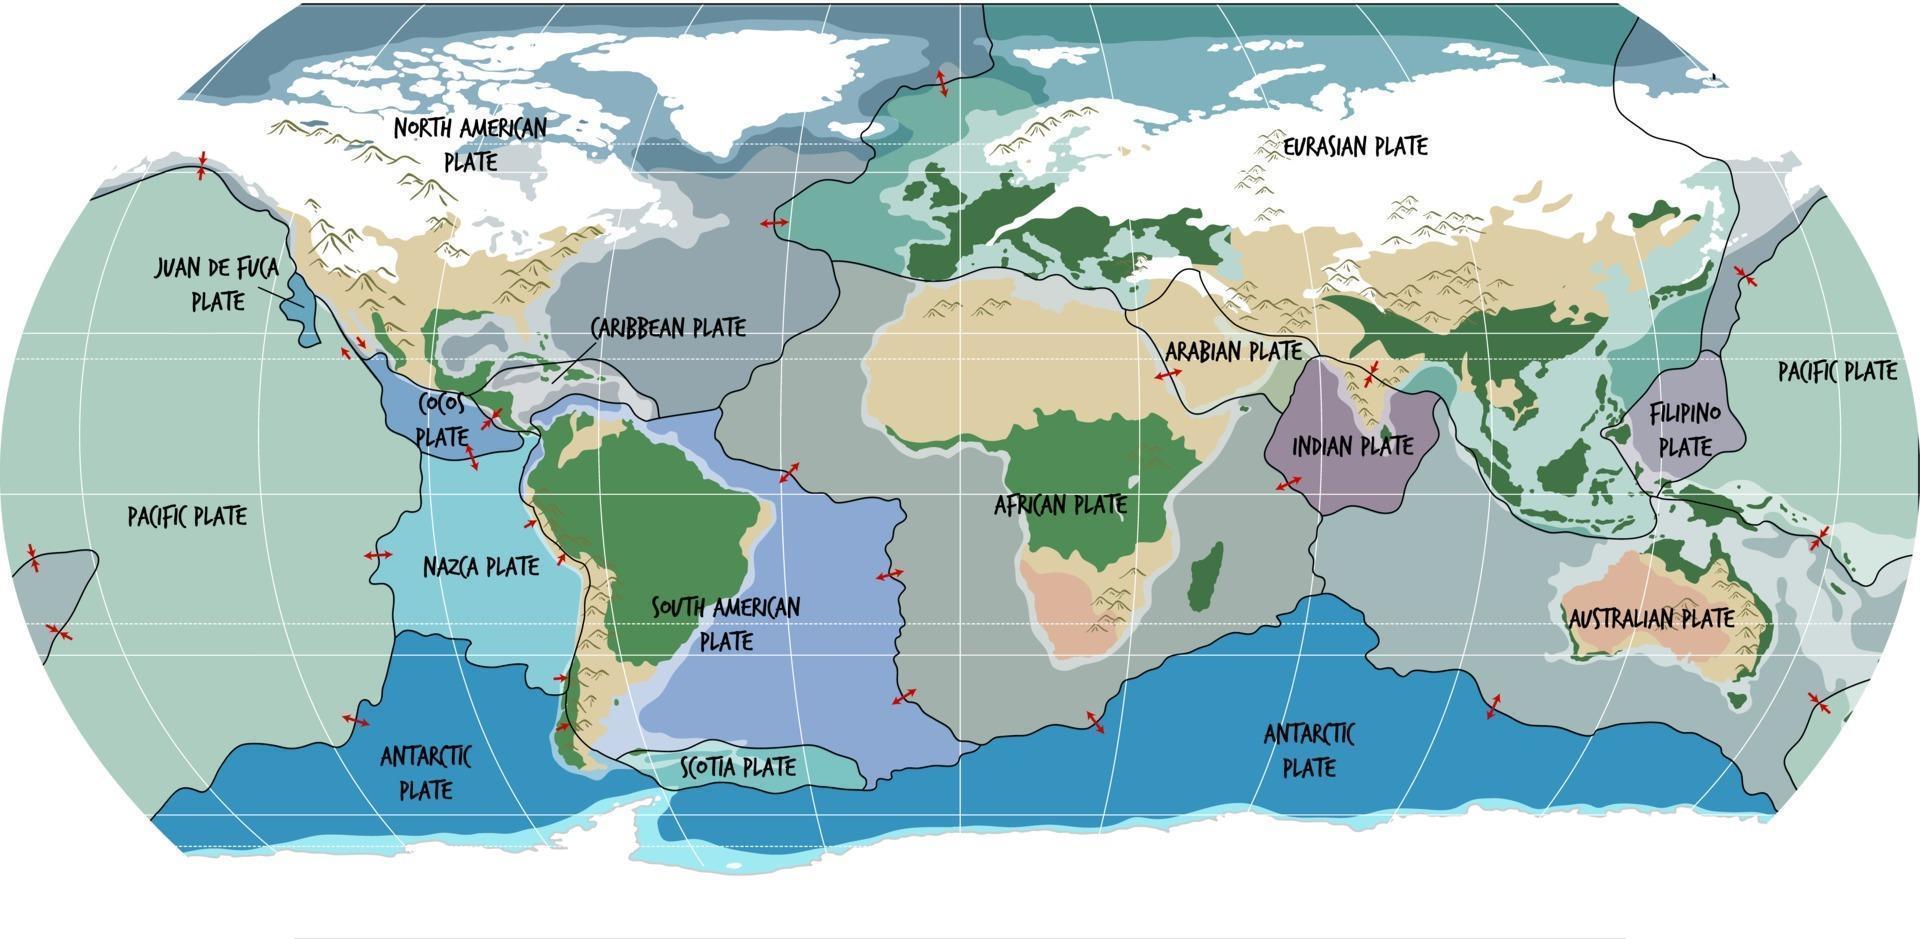 Weltkarte mit tektonischen Plattengrenzen vektor